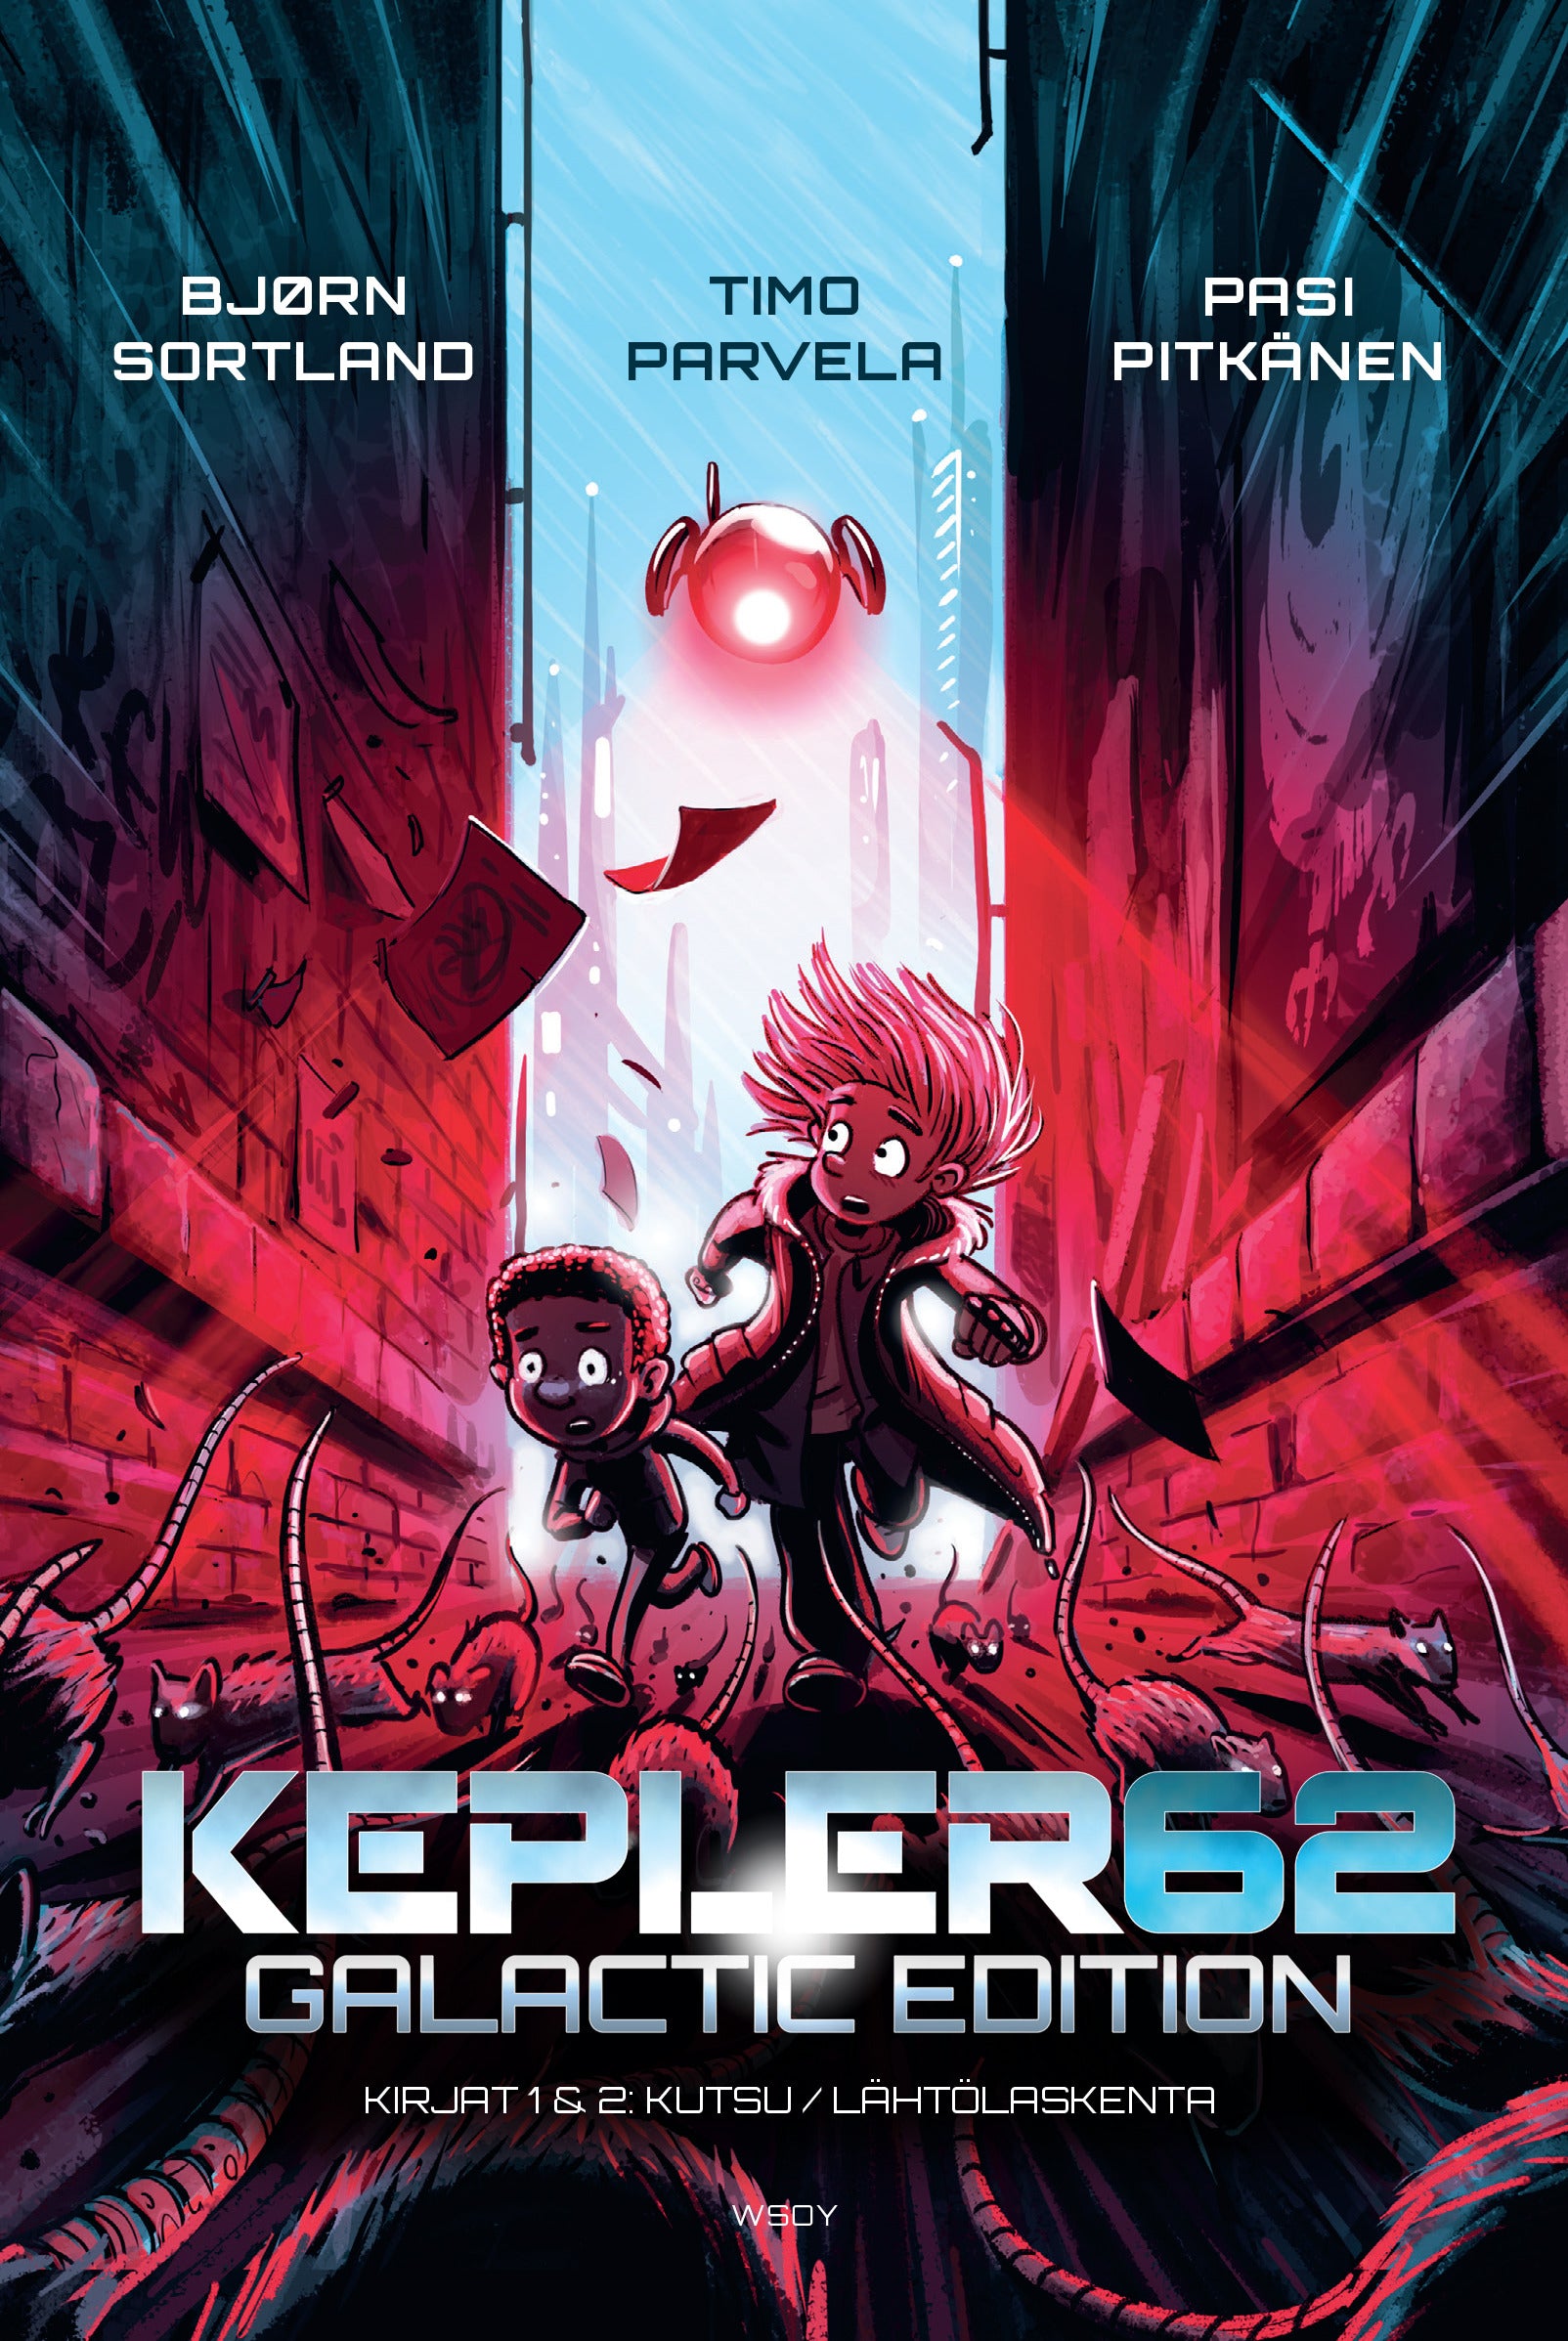 Kepler62 - Galactic edition: Kirjat 1 Kutsu ja 2 Lähtölaskenta